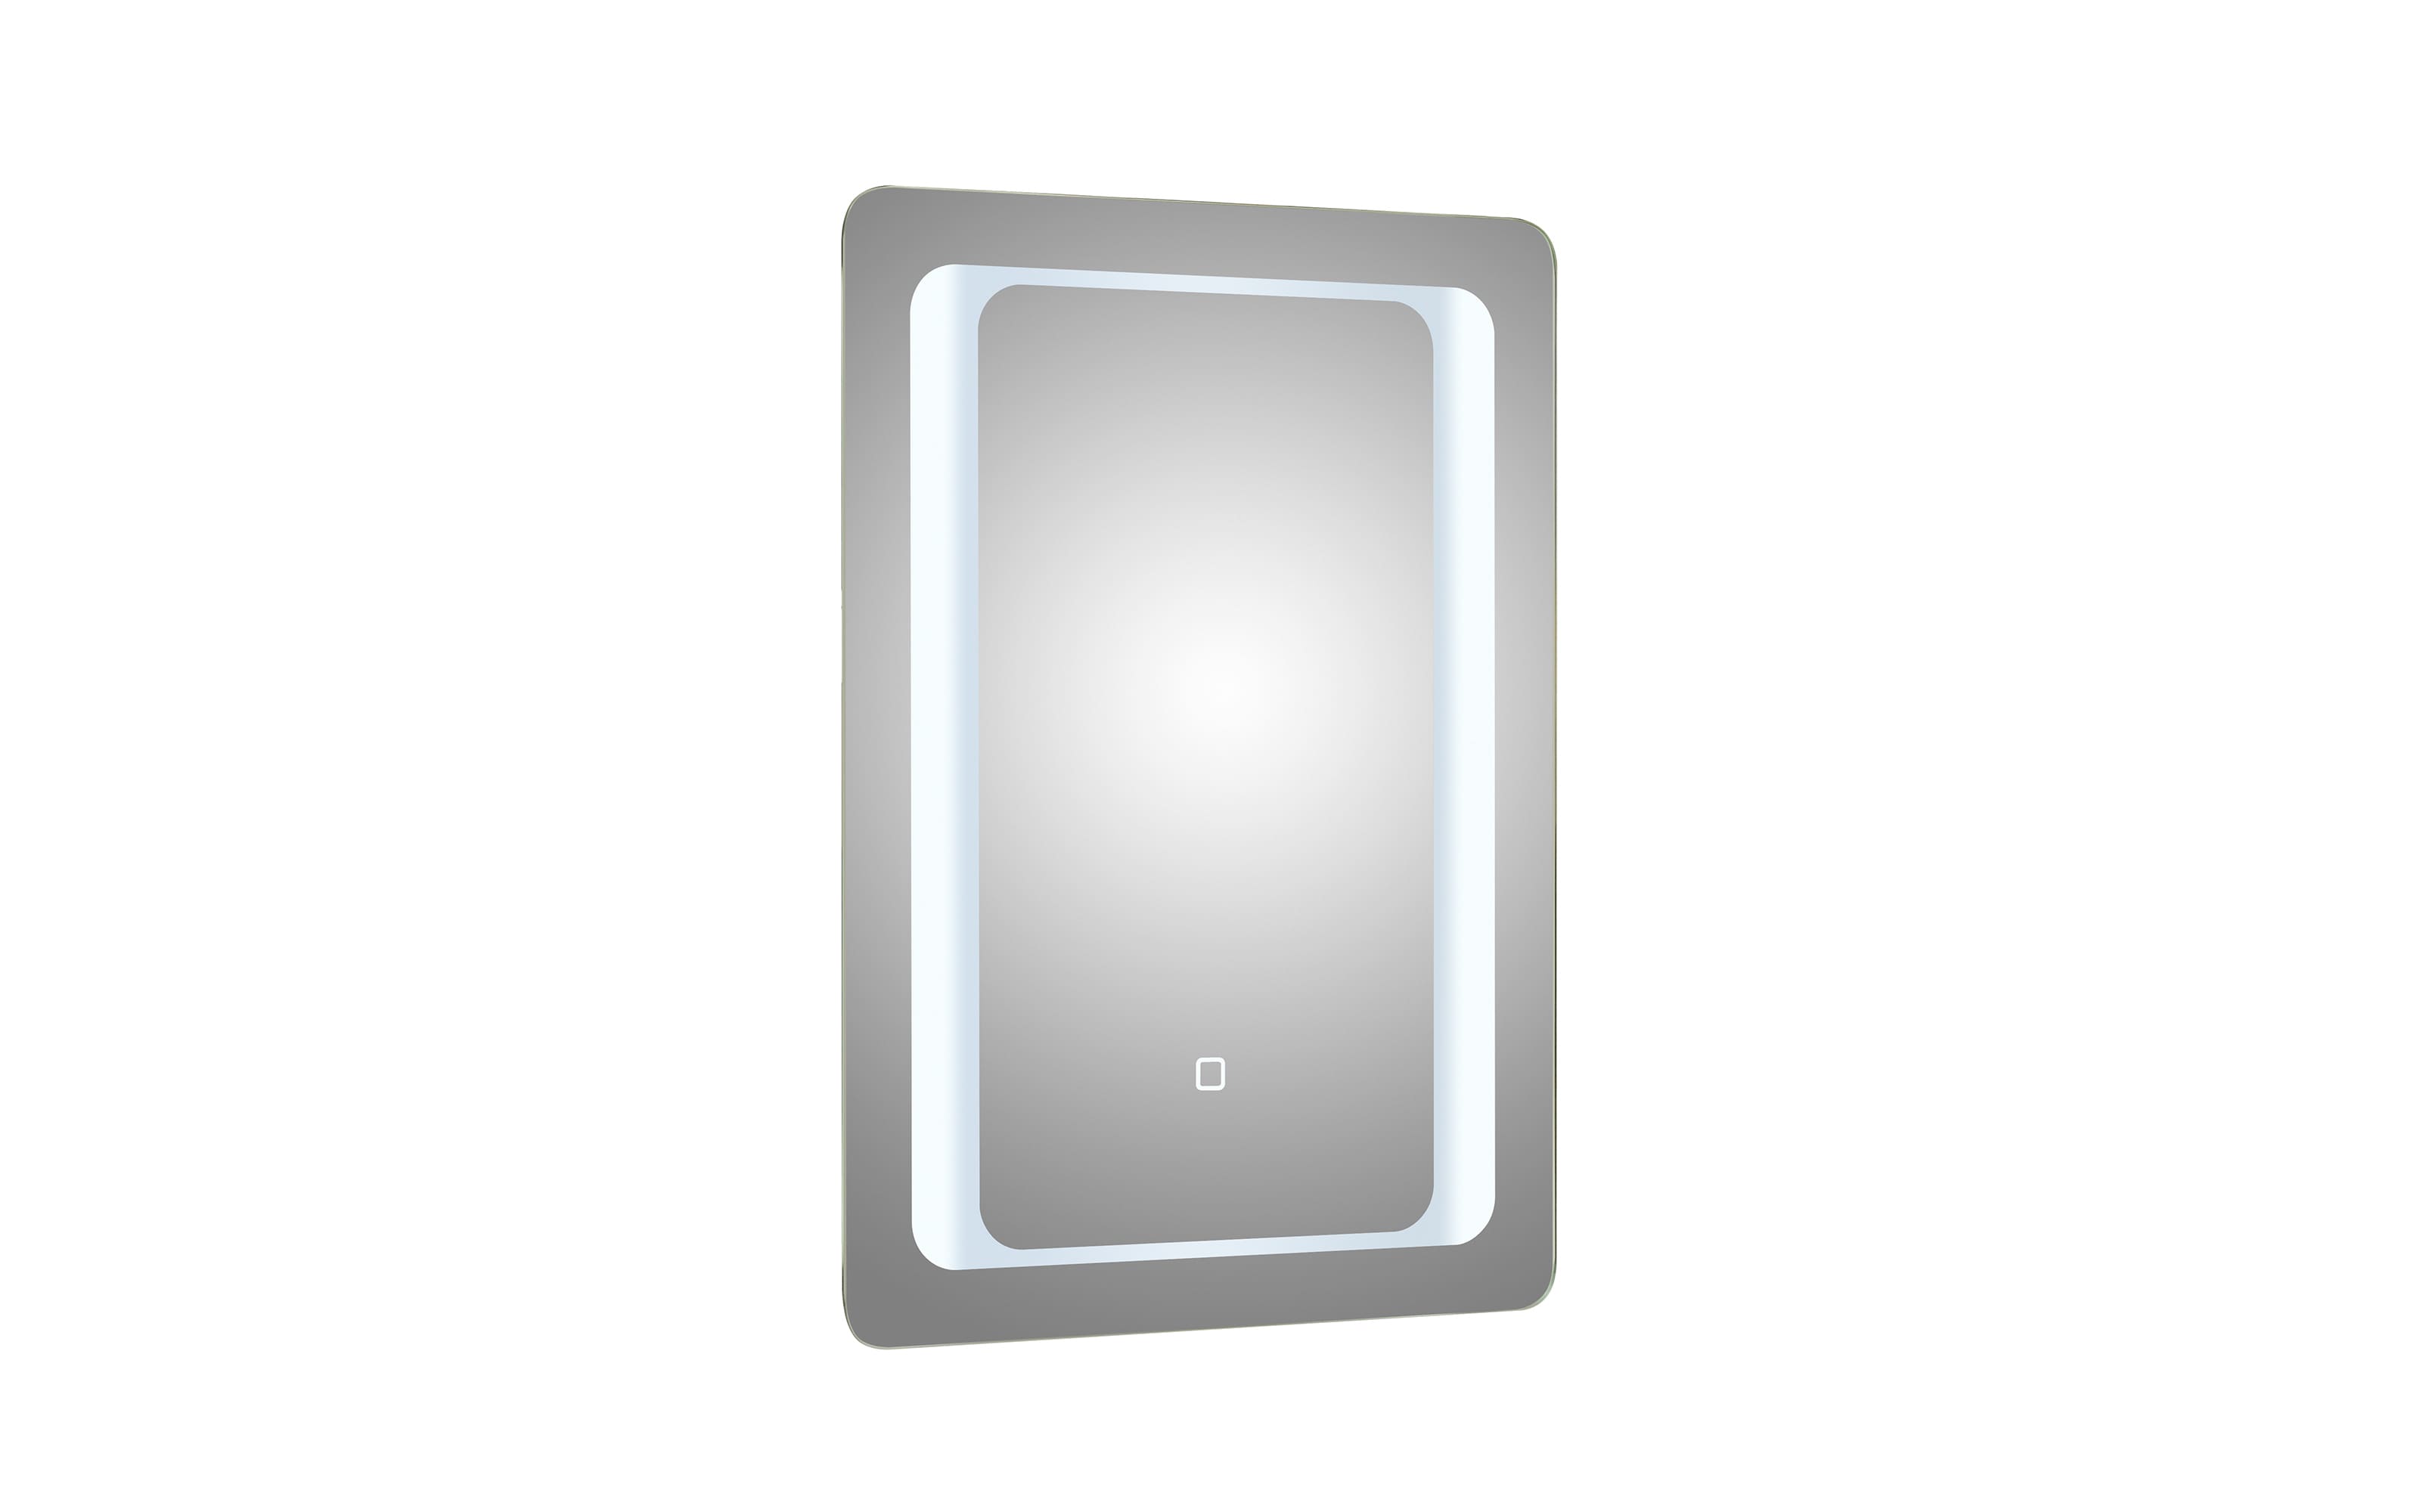 LED-Spiegel 21, Aluminium, 50 x 70 cm 